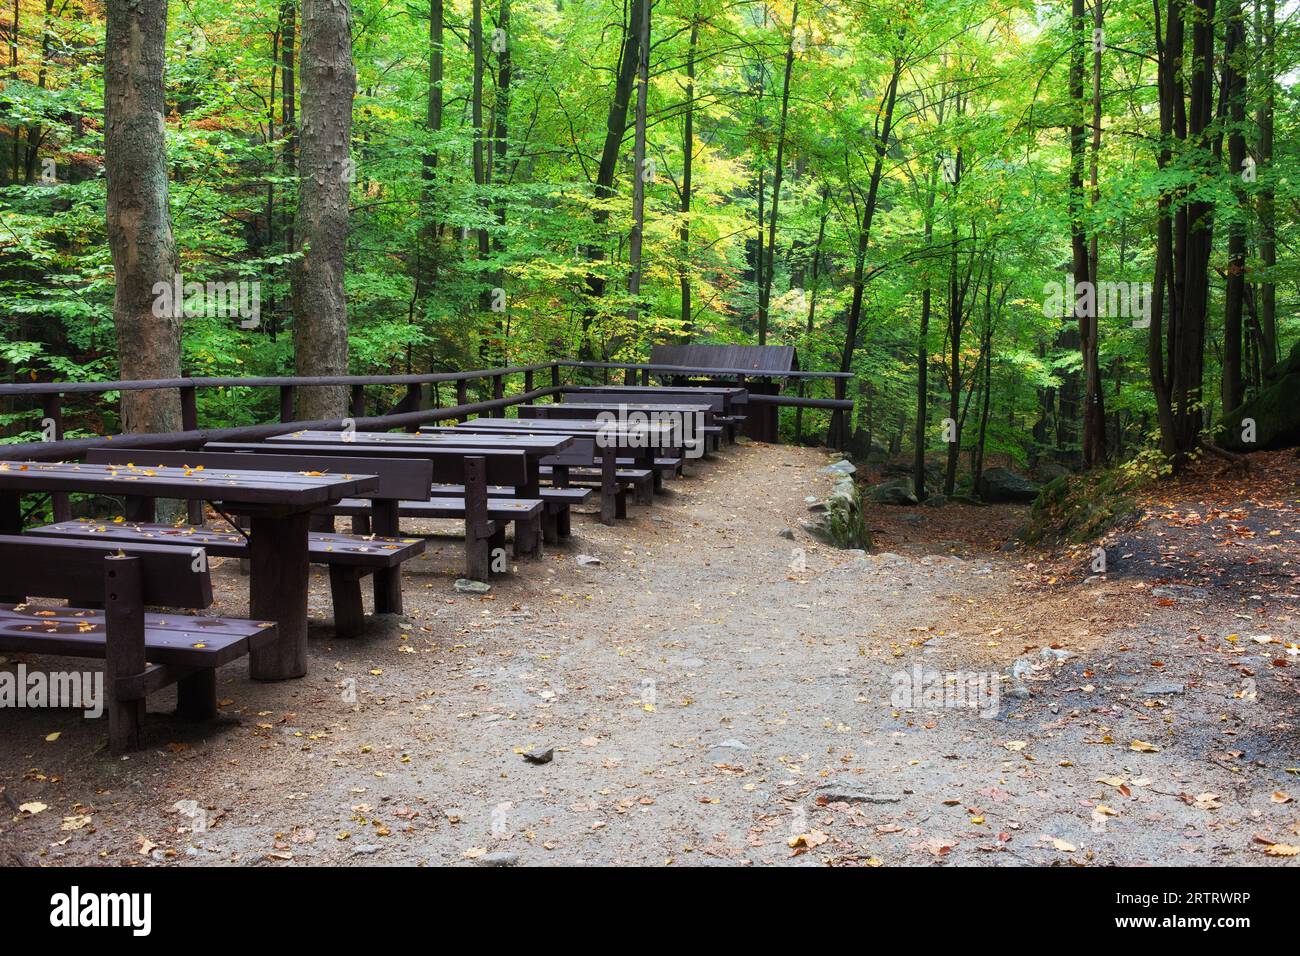 Tavoli con panche in foresta, picnic e luogo di riposo in un ambiente sano e naturale Foto Stock